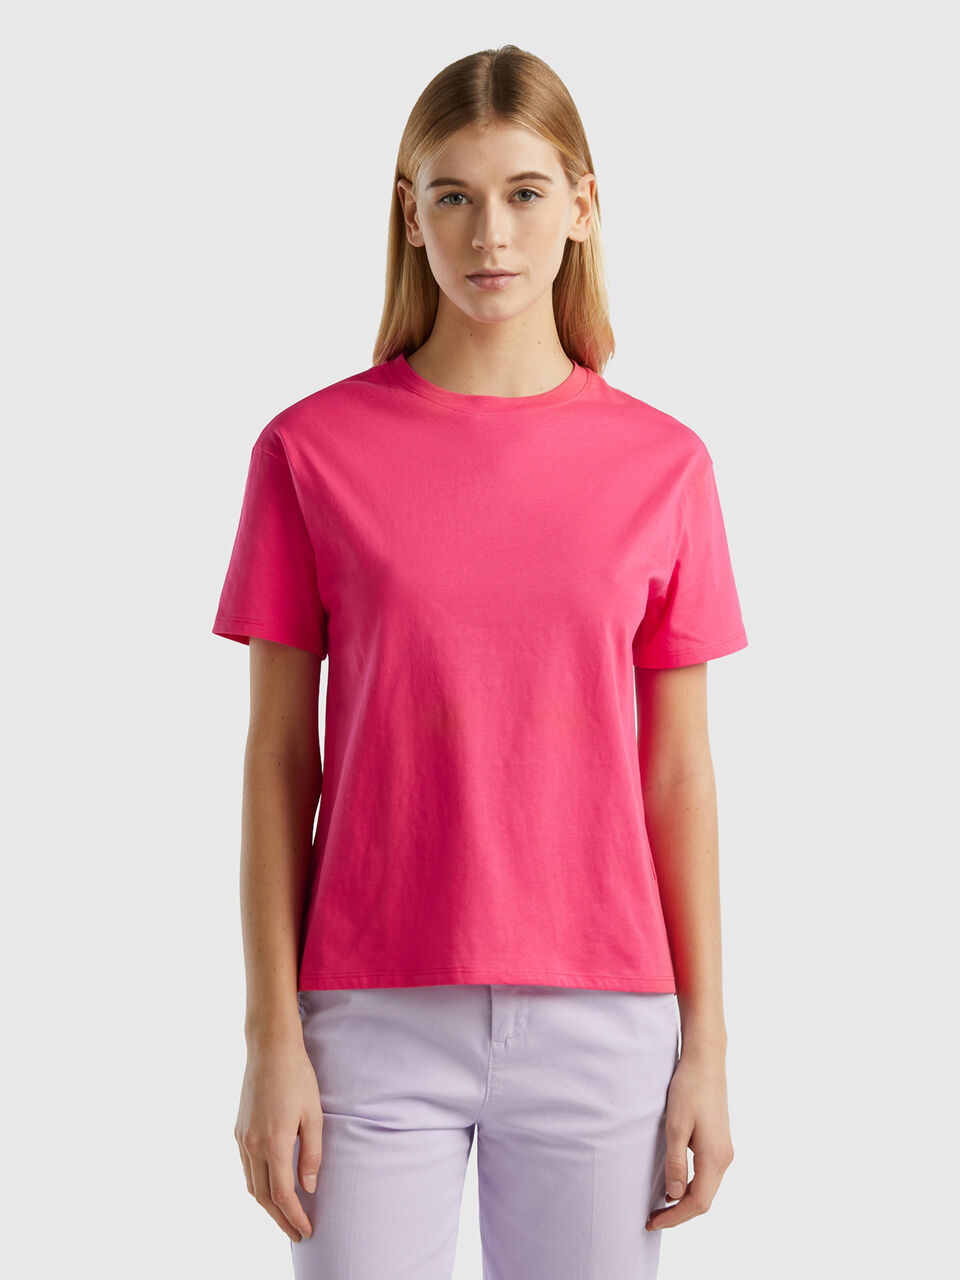 t-shirt Short Fuchsia 100% cotton sleeve Benetton - |